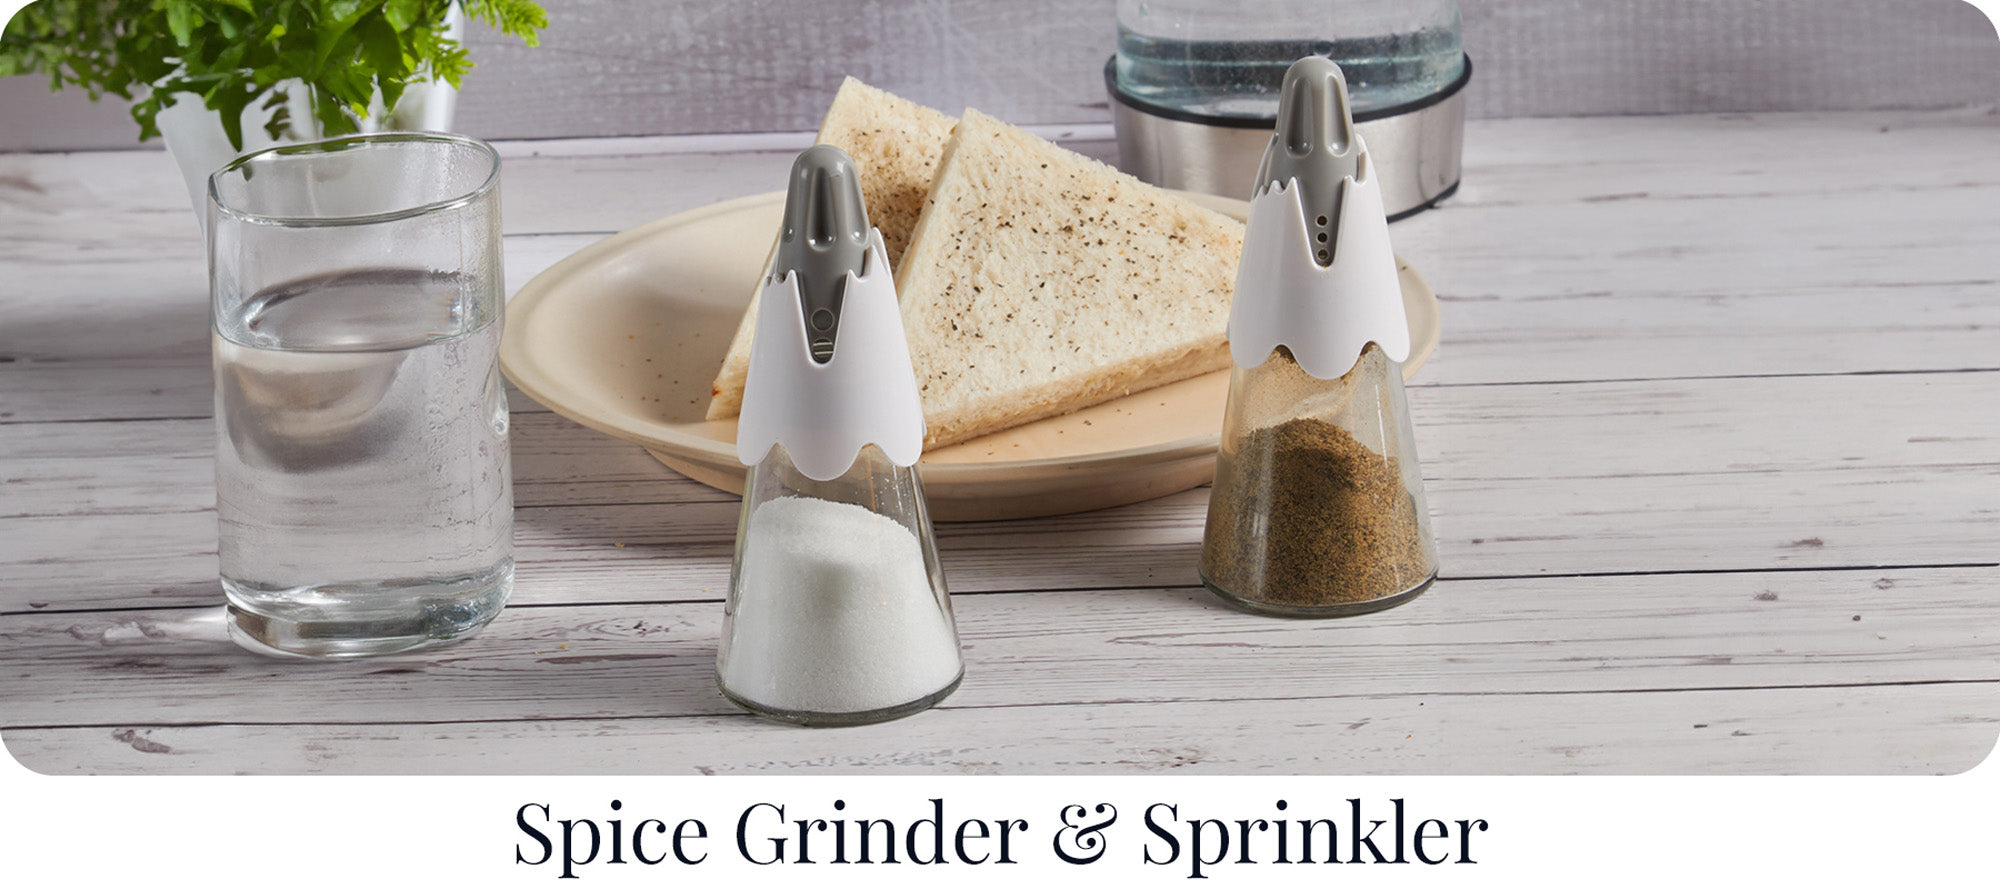 Spice Grinder & Sprinkler